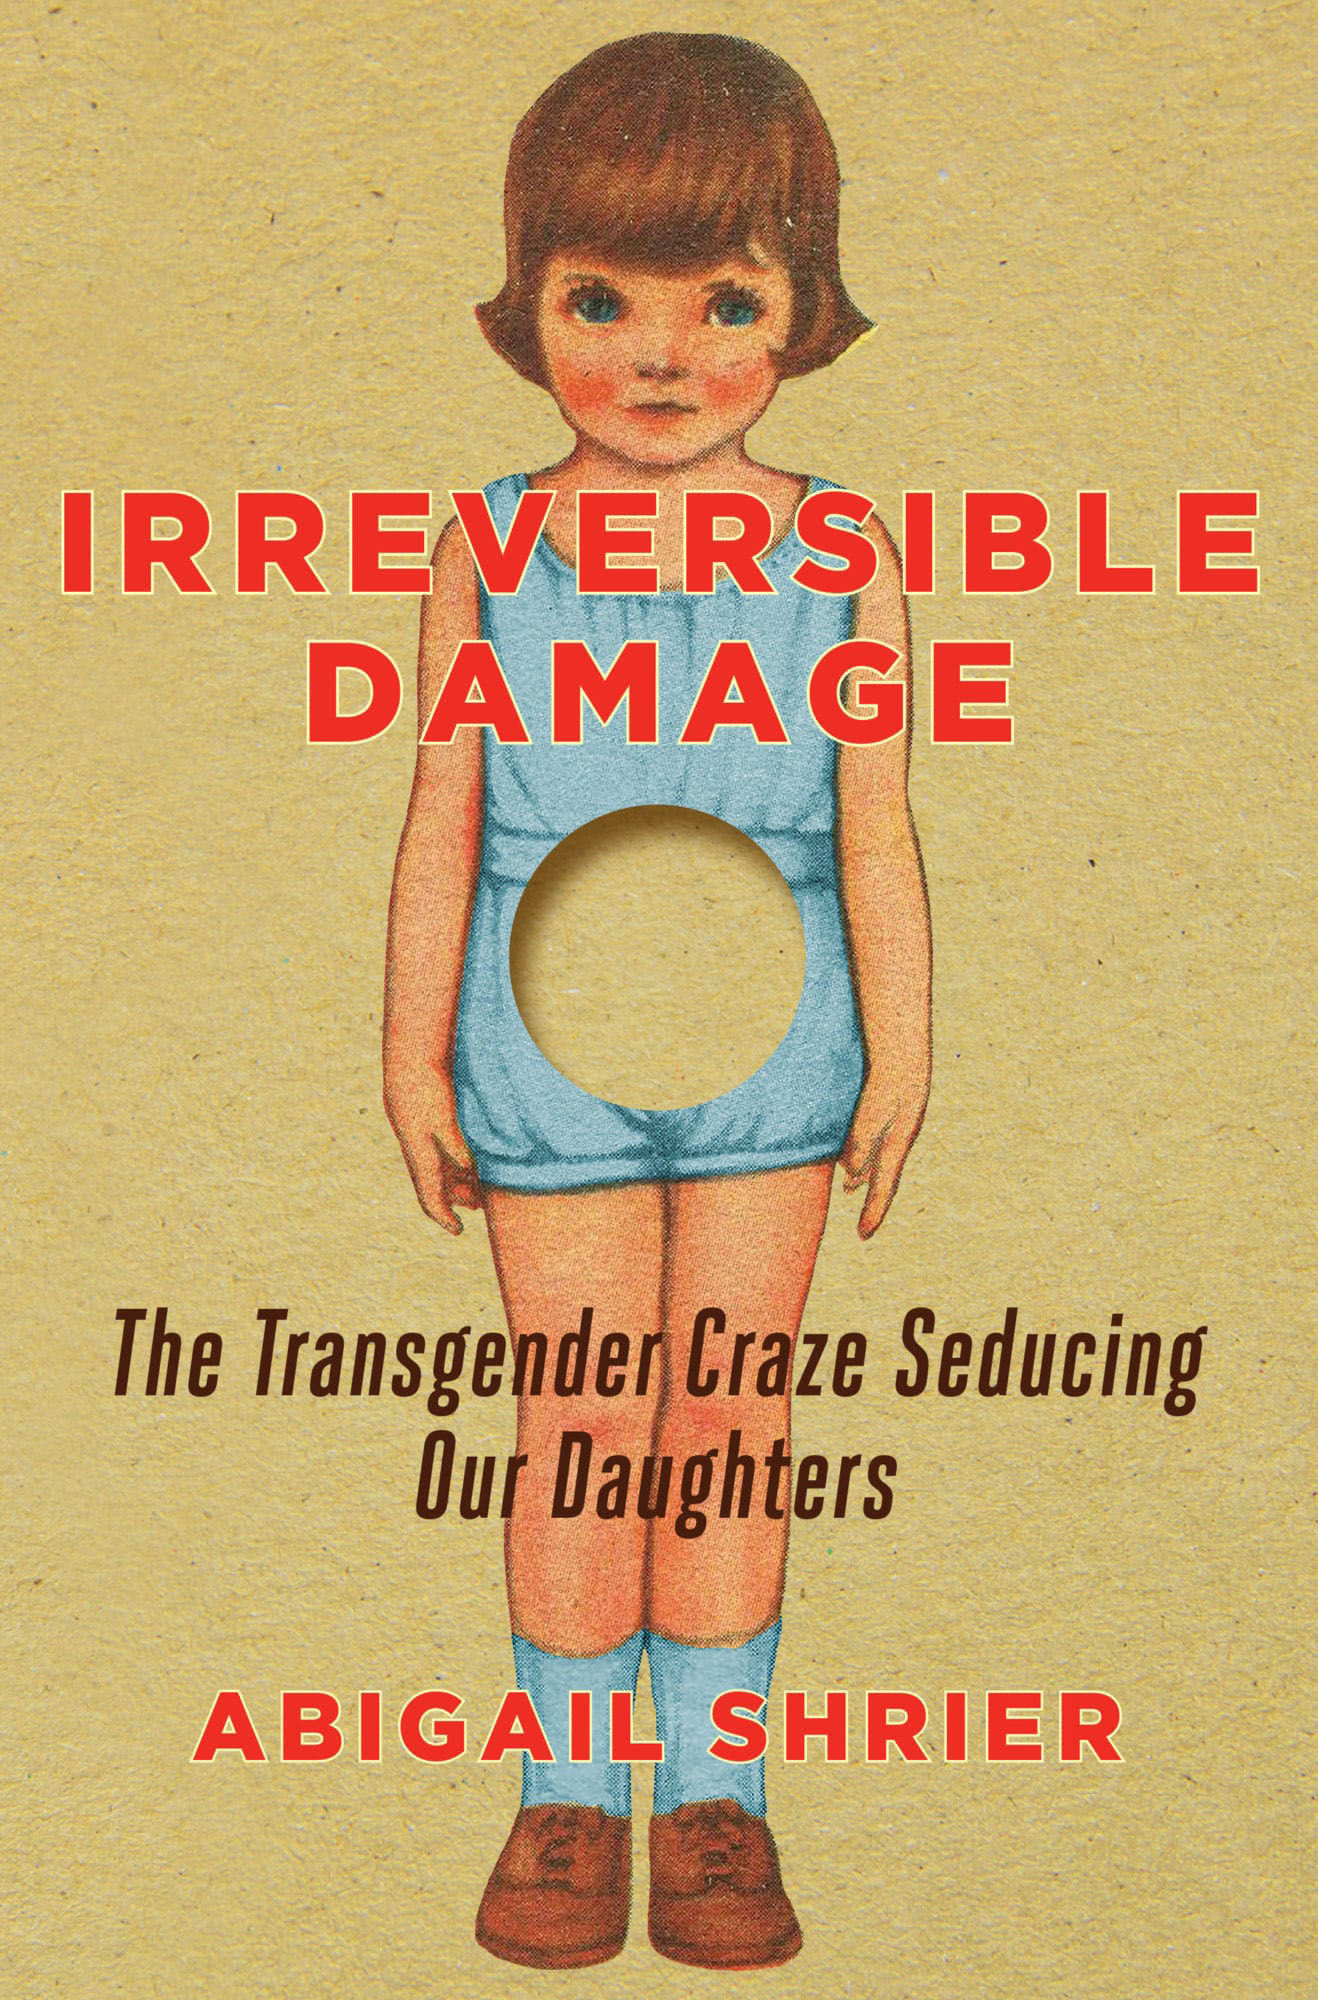 trans irreversible damage